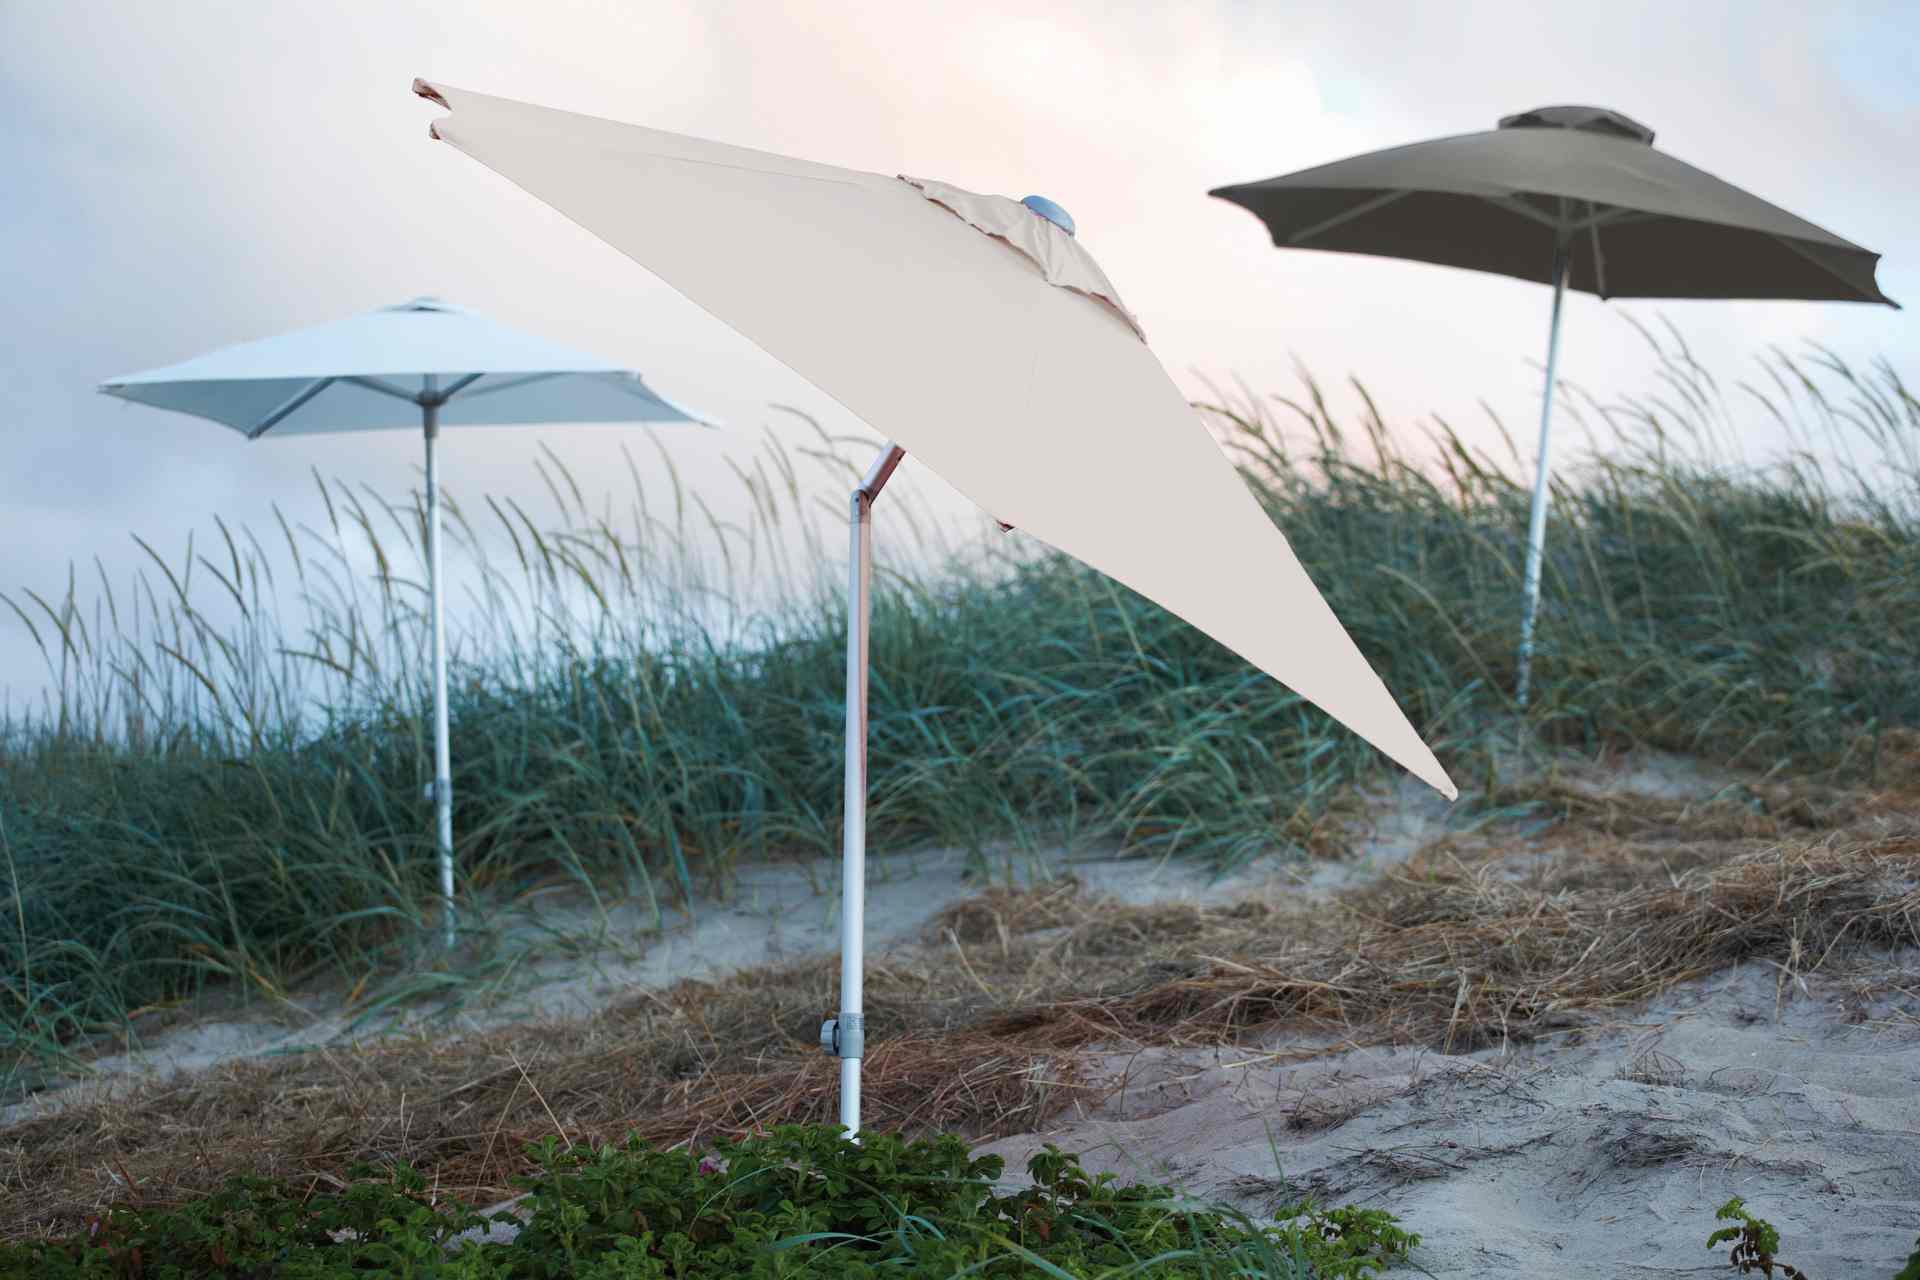 Der Sonnenschirm Elba überzeugt mit seinem modernen Design. Die Form des Schirms ist Eckig und hat eine Größe von 200 cm. Designet wurde er von der Marke Jan Kurtz und hat die Farbe Hellgrau.